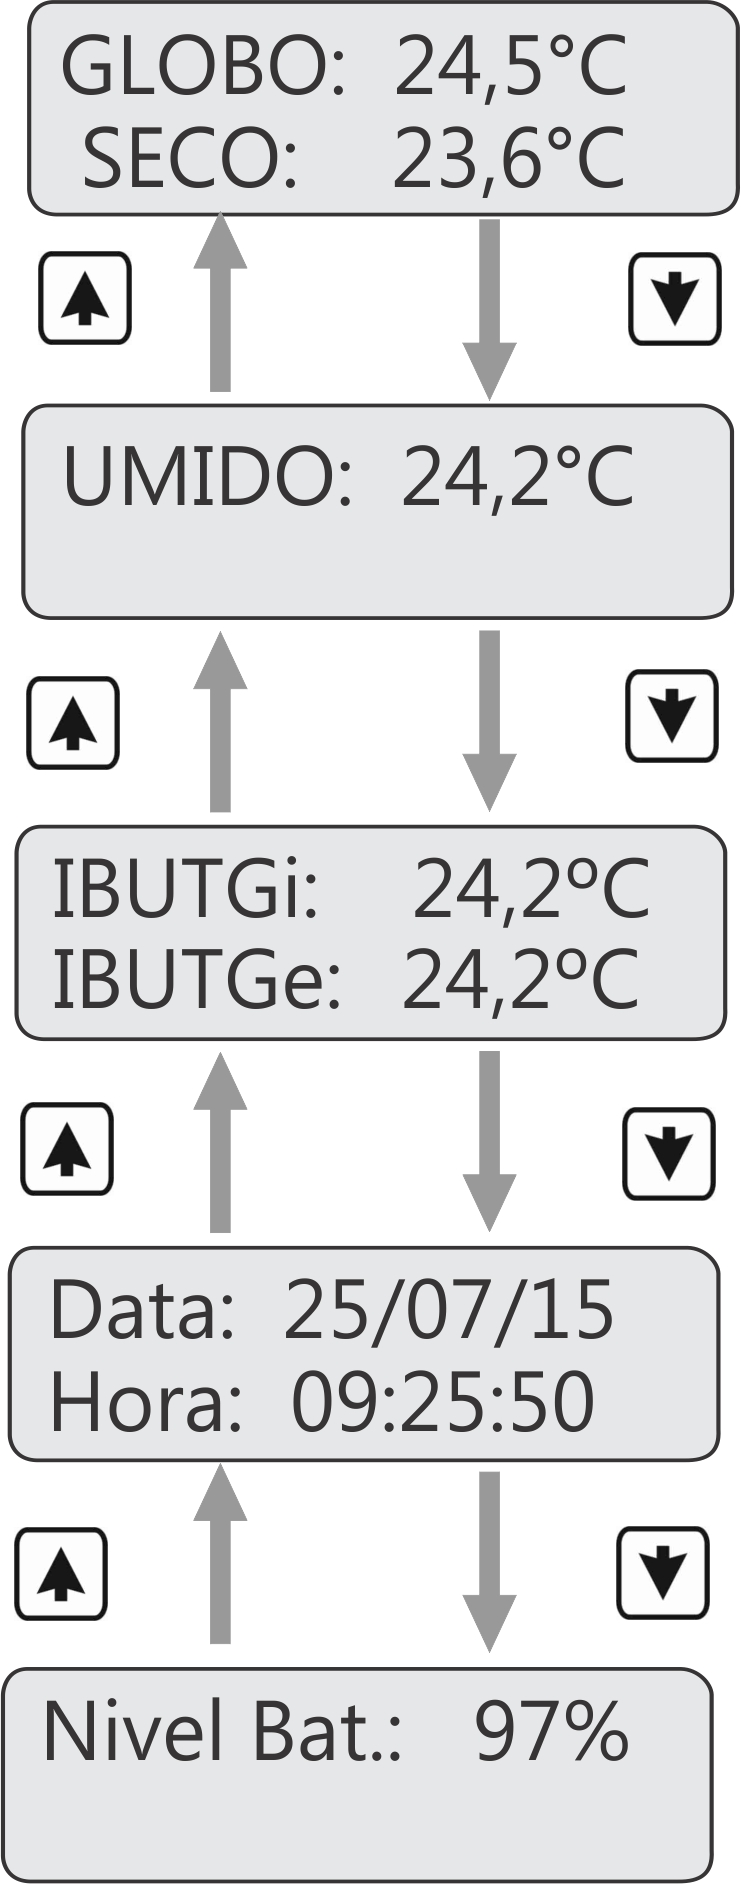 IBUTGe: Índice de bulbo úmido e termômetro de globo para ambientes externos com carga solar; Data/Hora: Relógio em tempo real (RTC); Nivel Bat.: Nível percentual da bateria do equipamento.